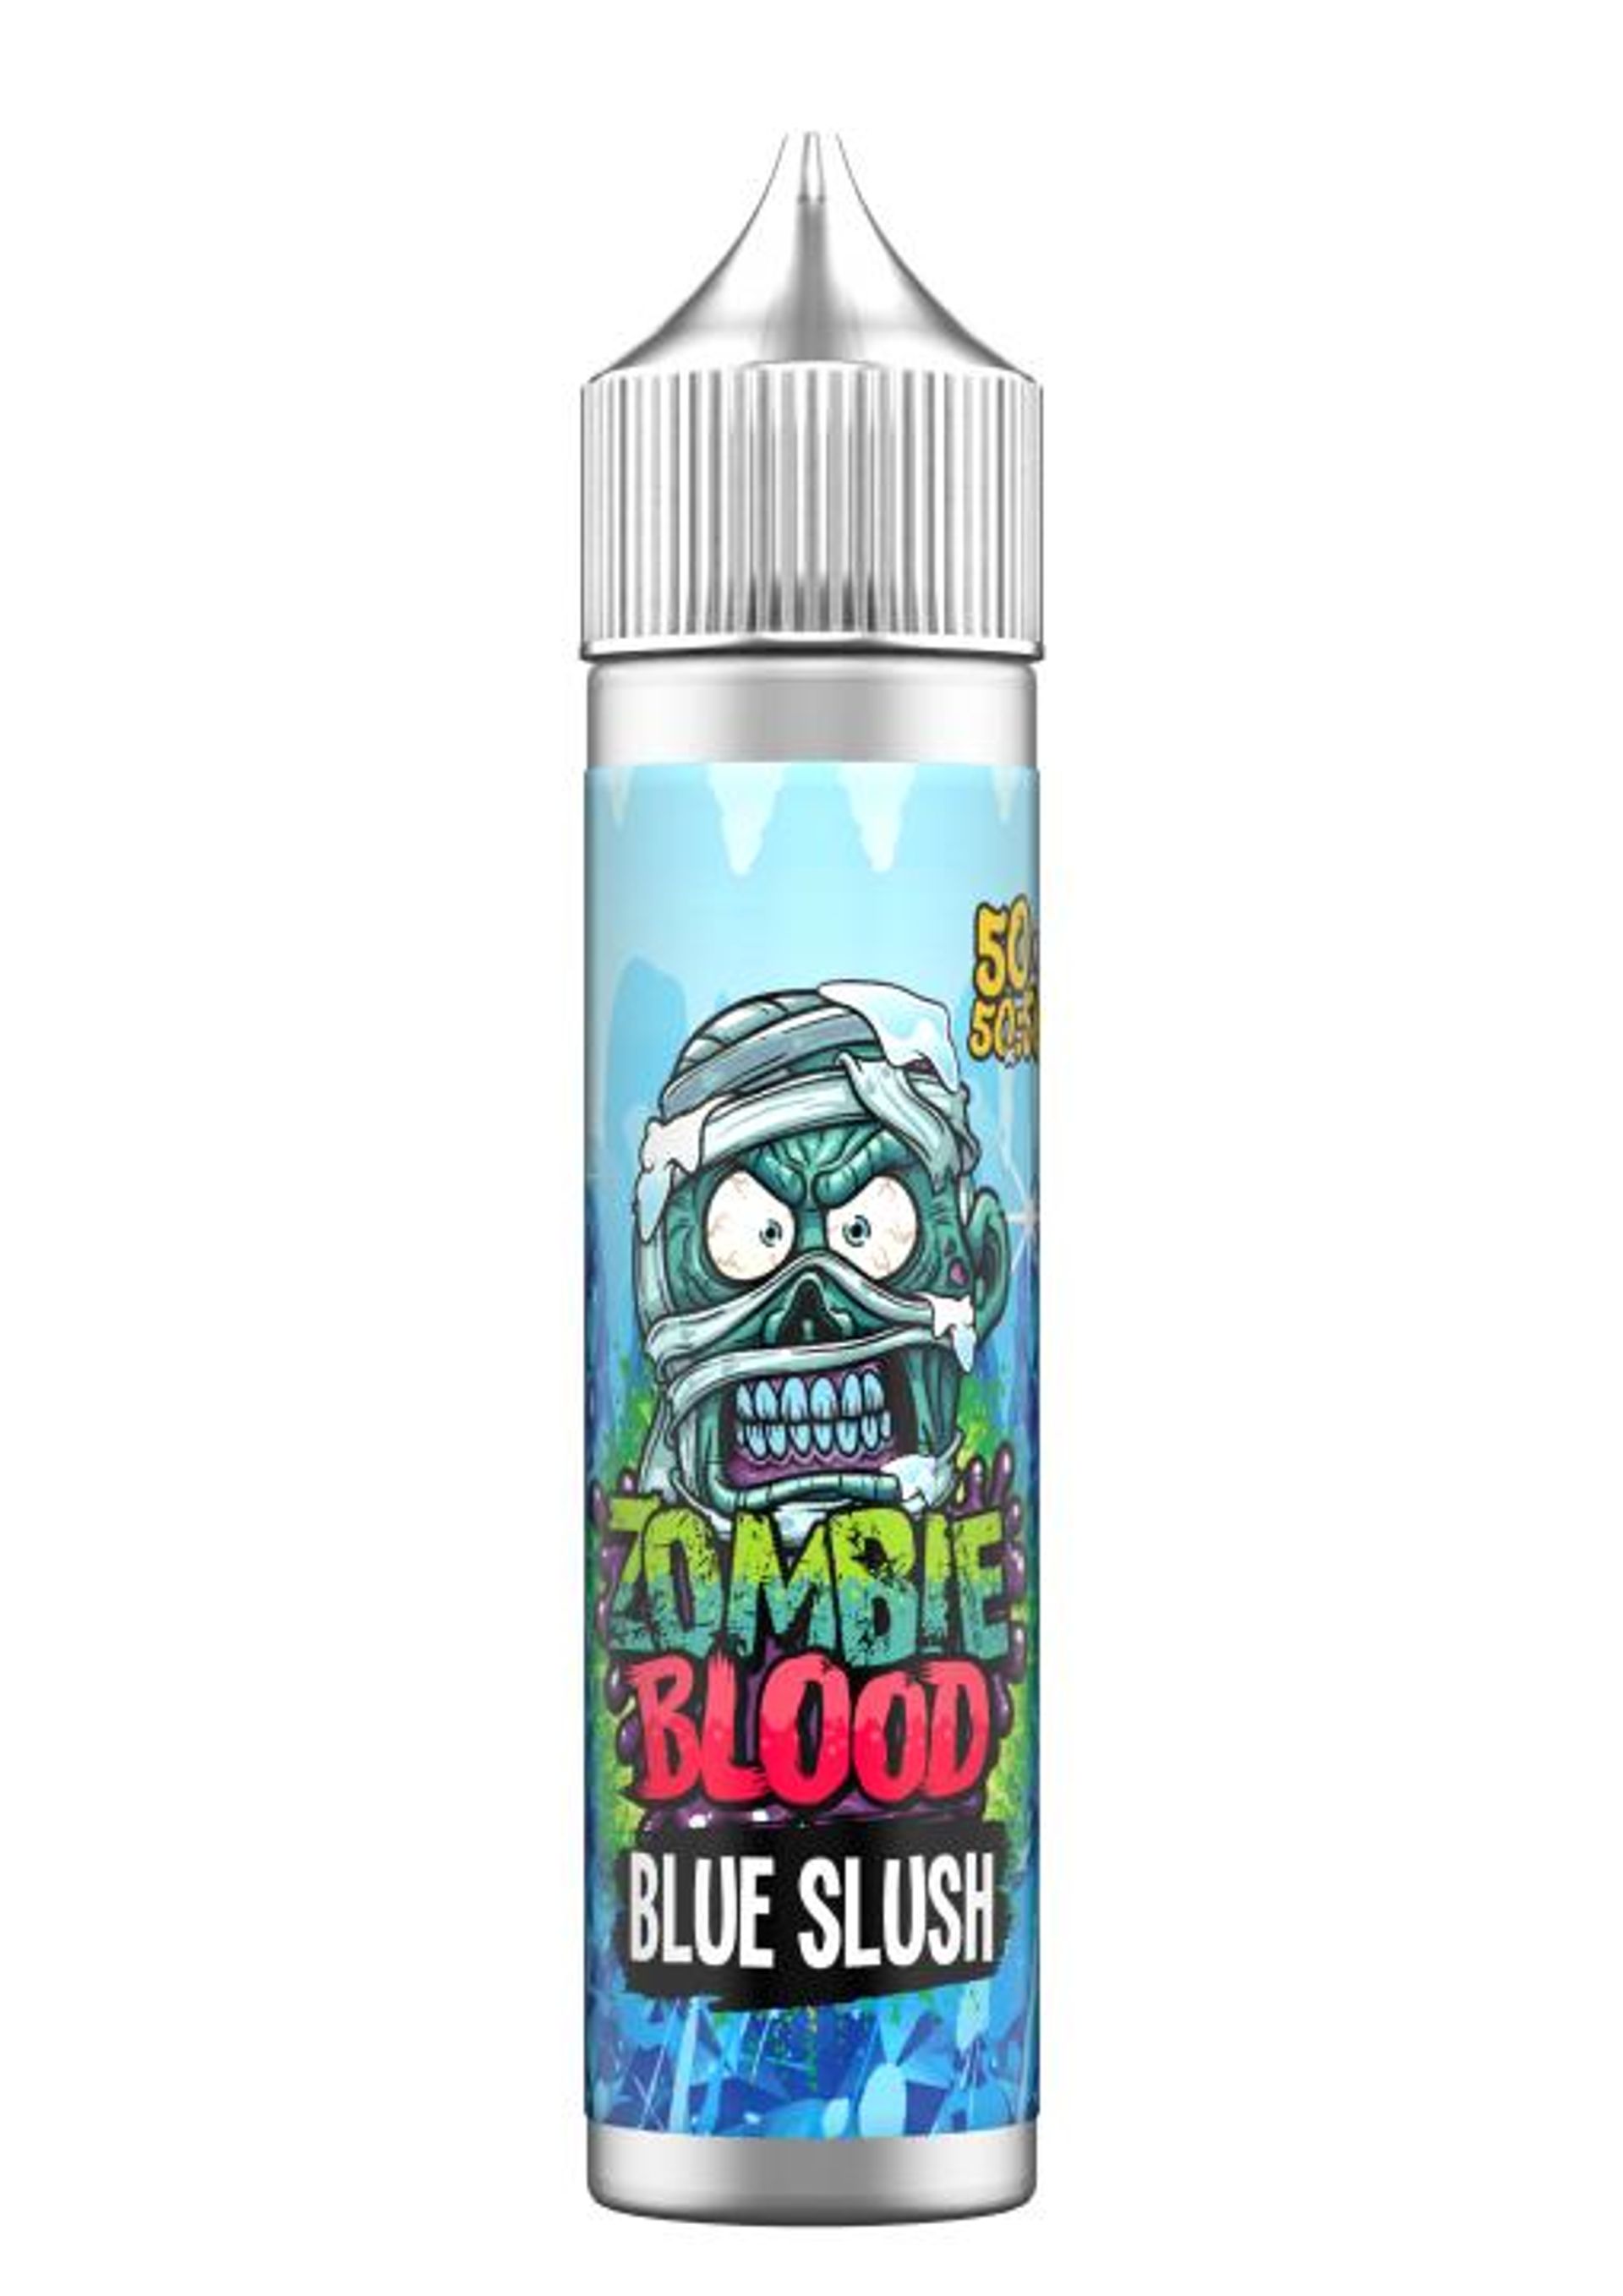 Image of Blue Slush by Zombie Blood